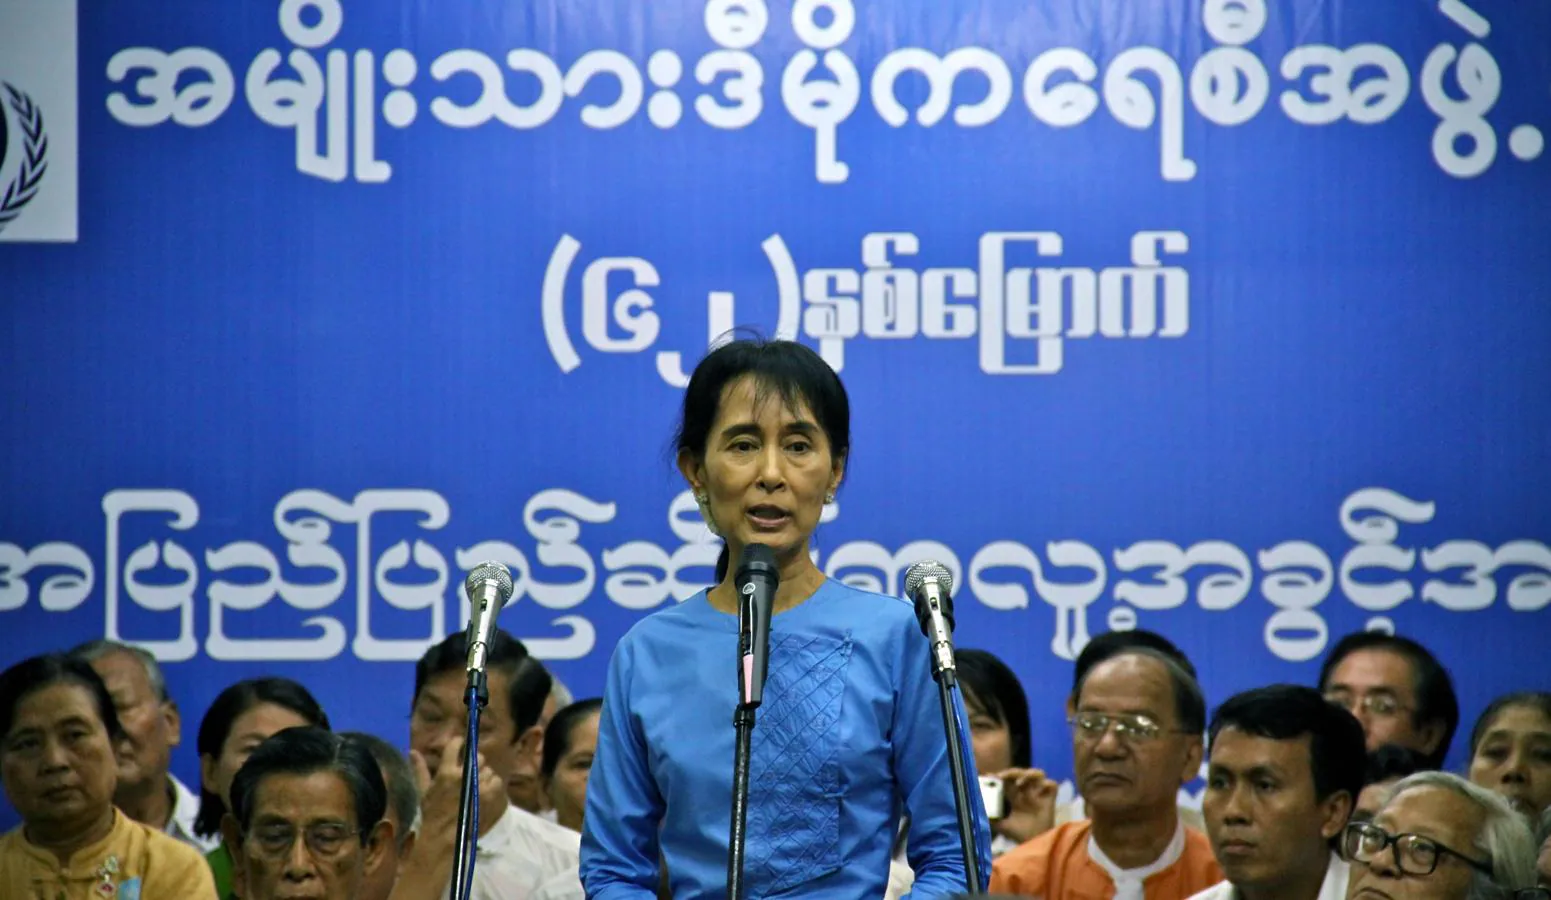 Nada más ser liberada, Aung San Suu Kyi concedió una entrevista a ABC en la que se mostraba convencida de que vería la democracia en Birmania, pero no ocultaba su pragmatismo para mantener buenas relaciones con regímenes autoritarios como el chino. 